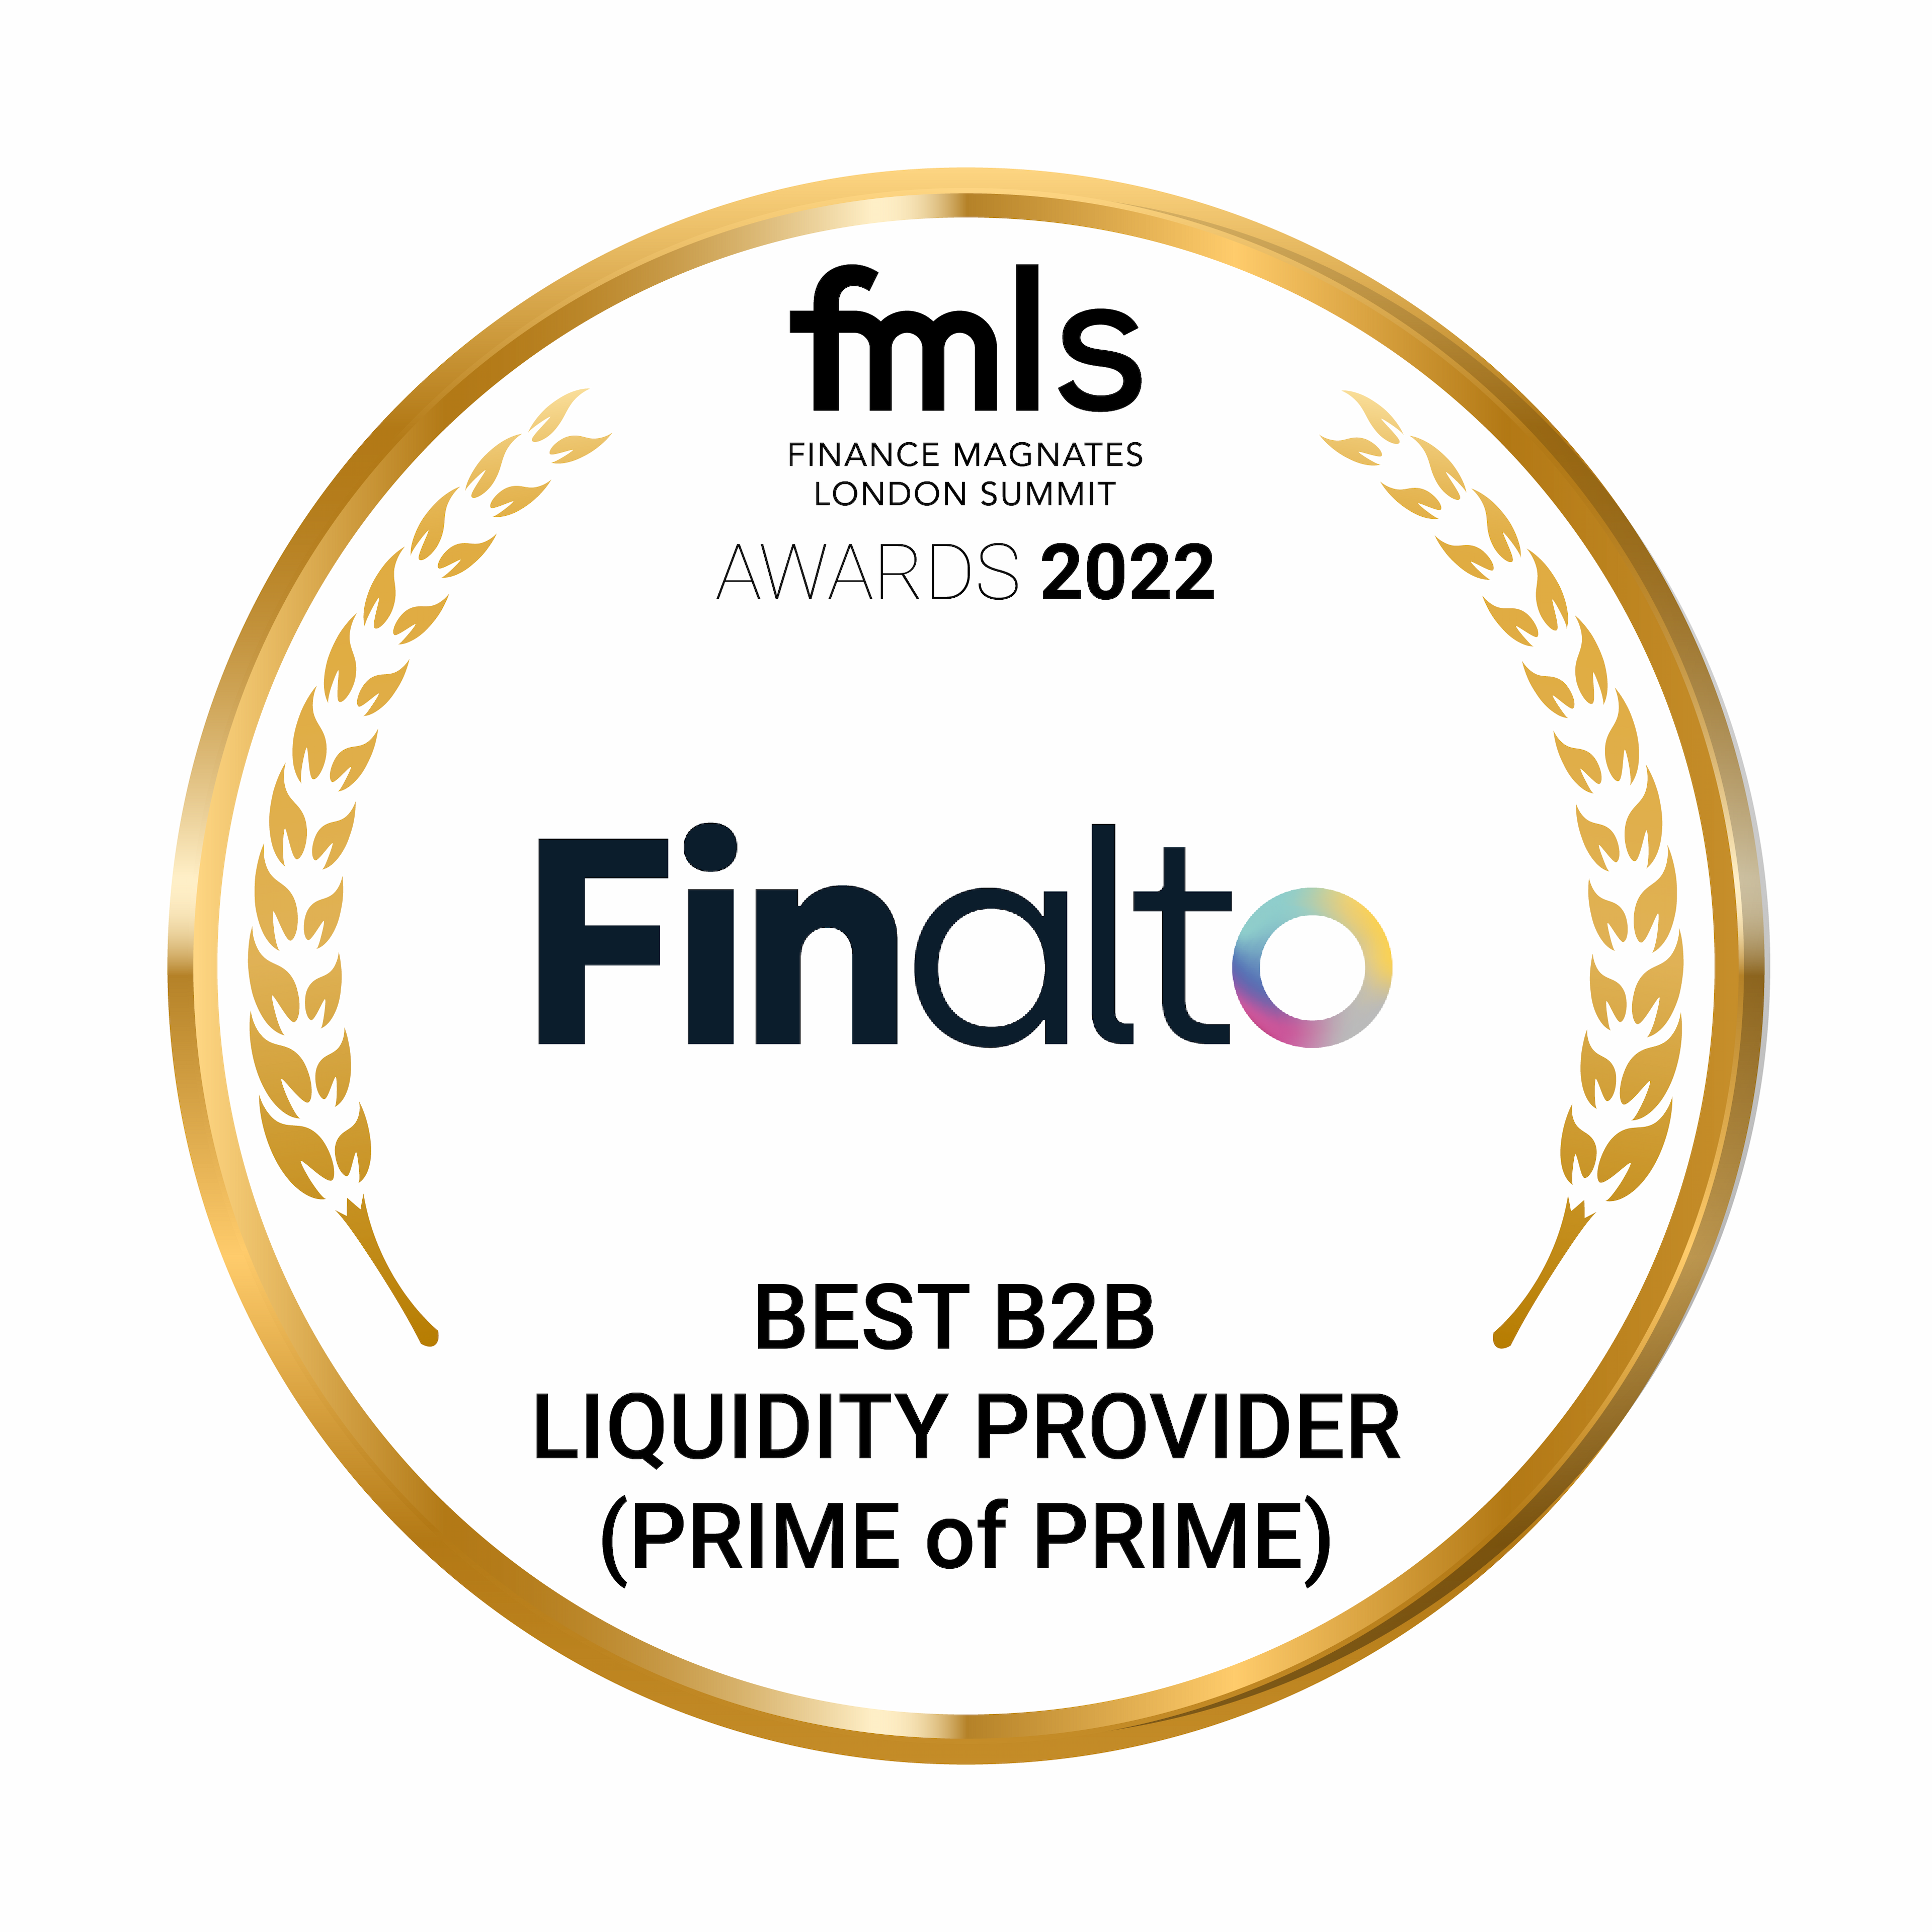 Finalto award: Best B2B Liquidity Provider (Prime of Prime)